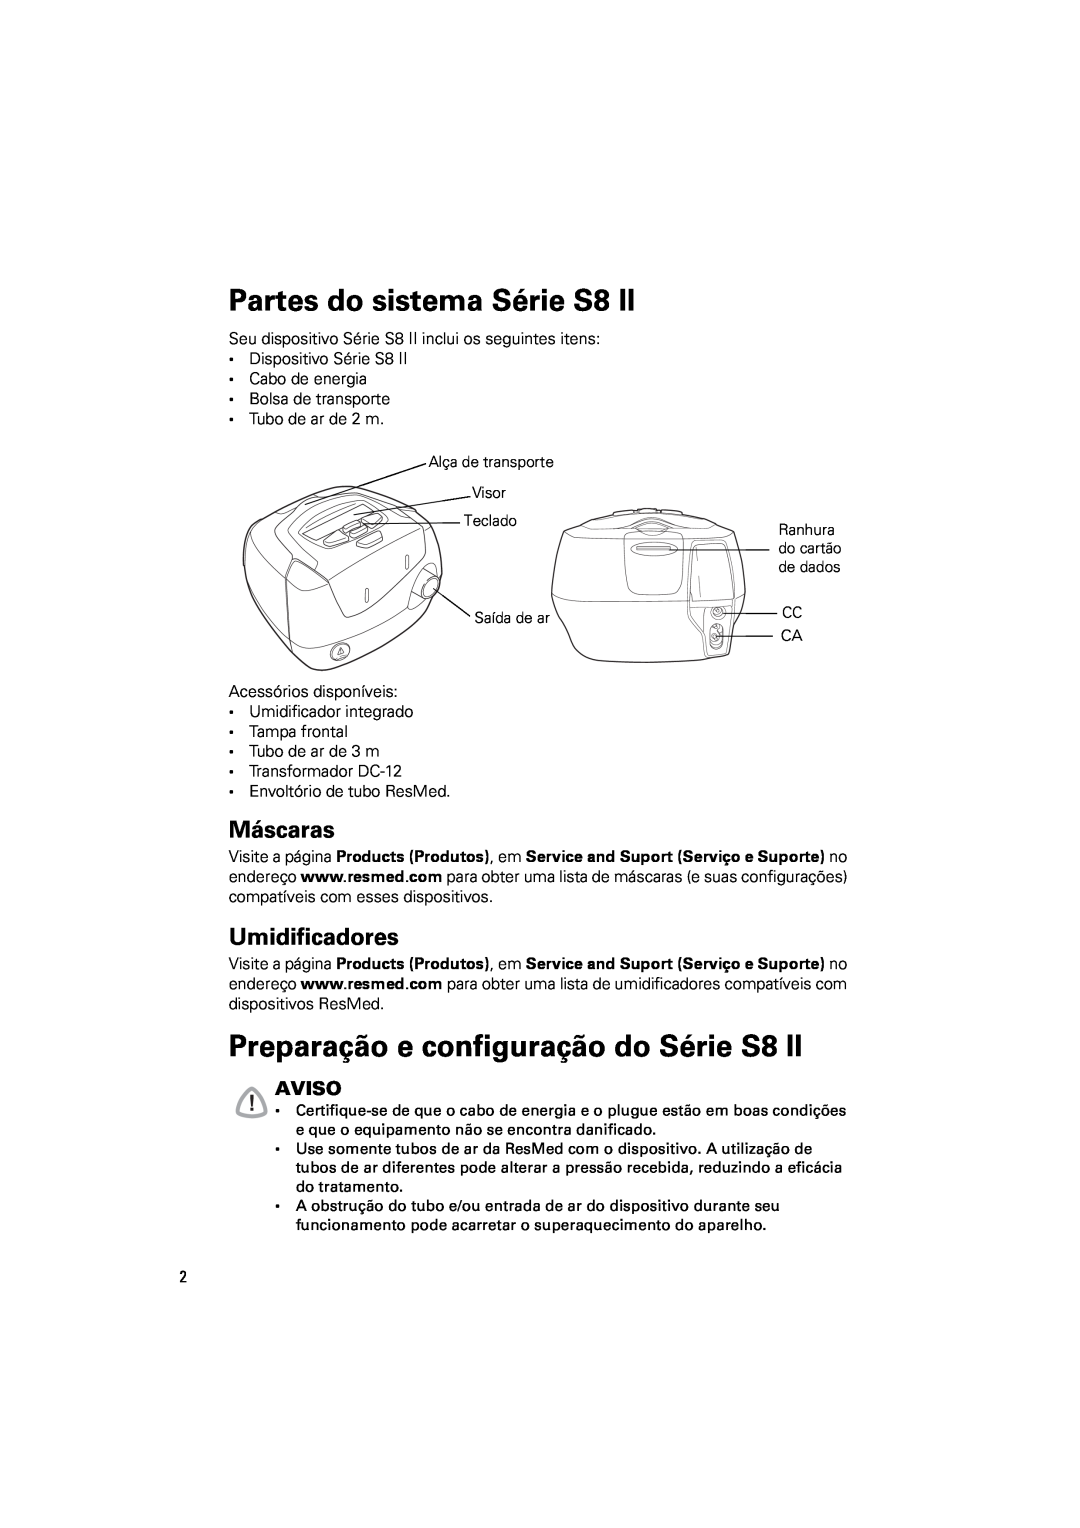 ResMed s8 manual Partes do sistema Série S8, Preparação e configuração do Série S8, Máscaras, Umidificadores, Aviso 